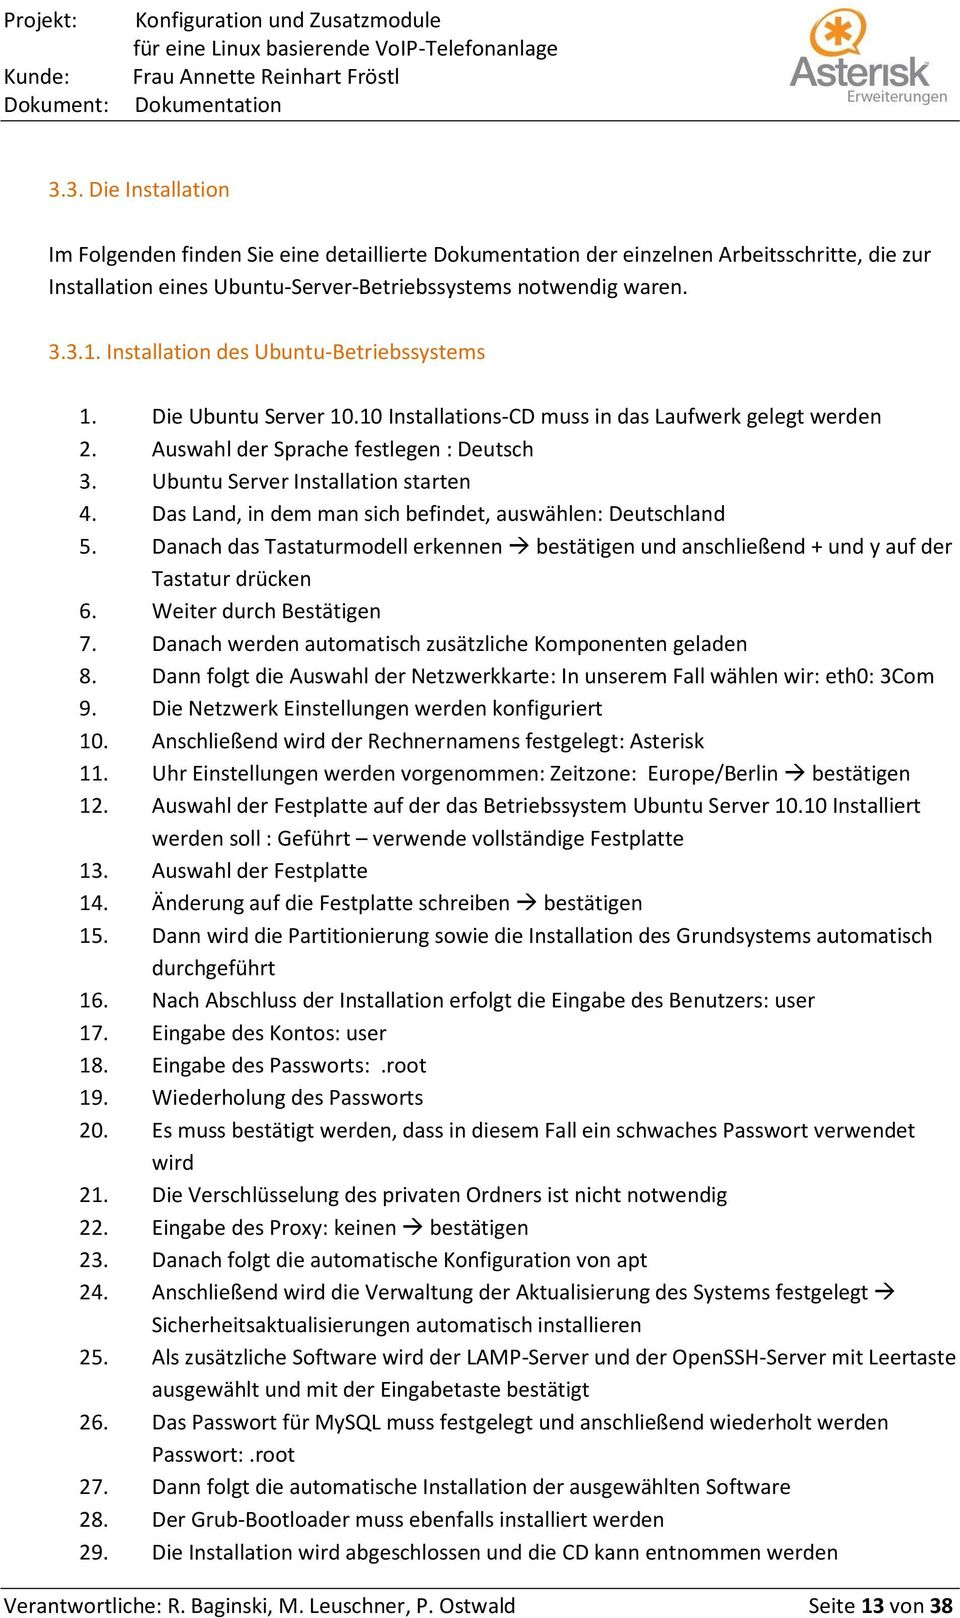 Ubuntu Server Installation starten 4. Das Land, in dem man sich befindet, auswählen: Deutschland 5. Danach das Tastaturmodell erkennen bestätigen und anschließend + und y auf der Tastatur drücken 6.